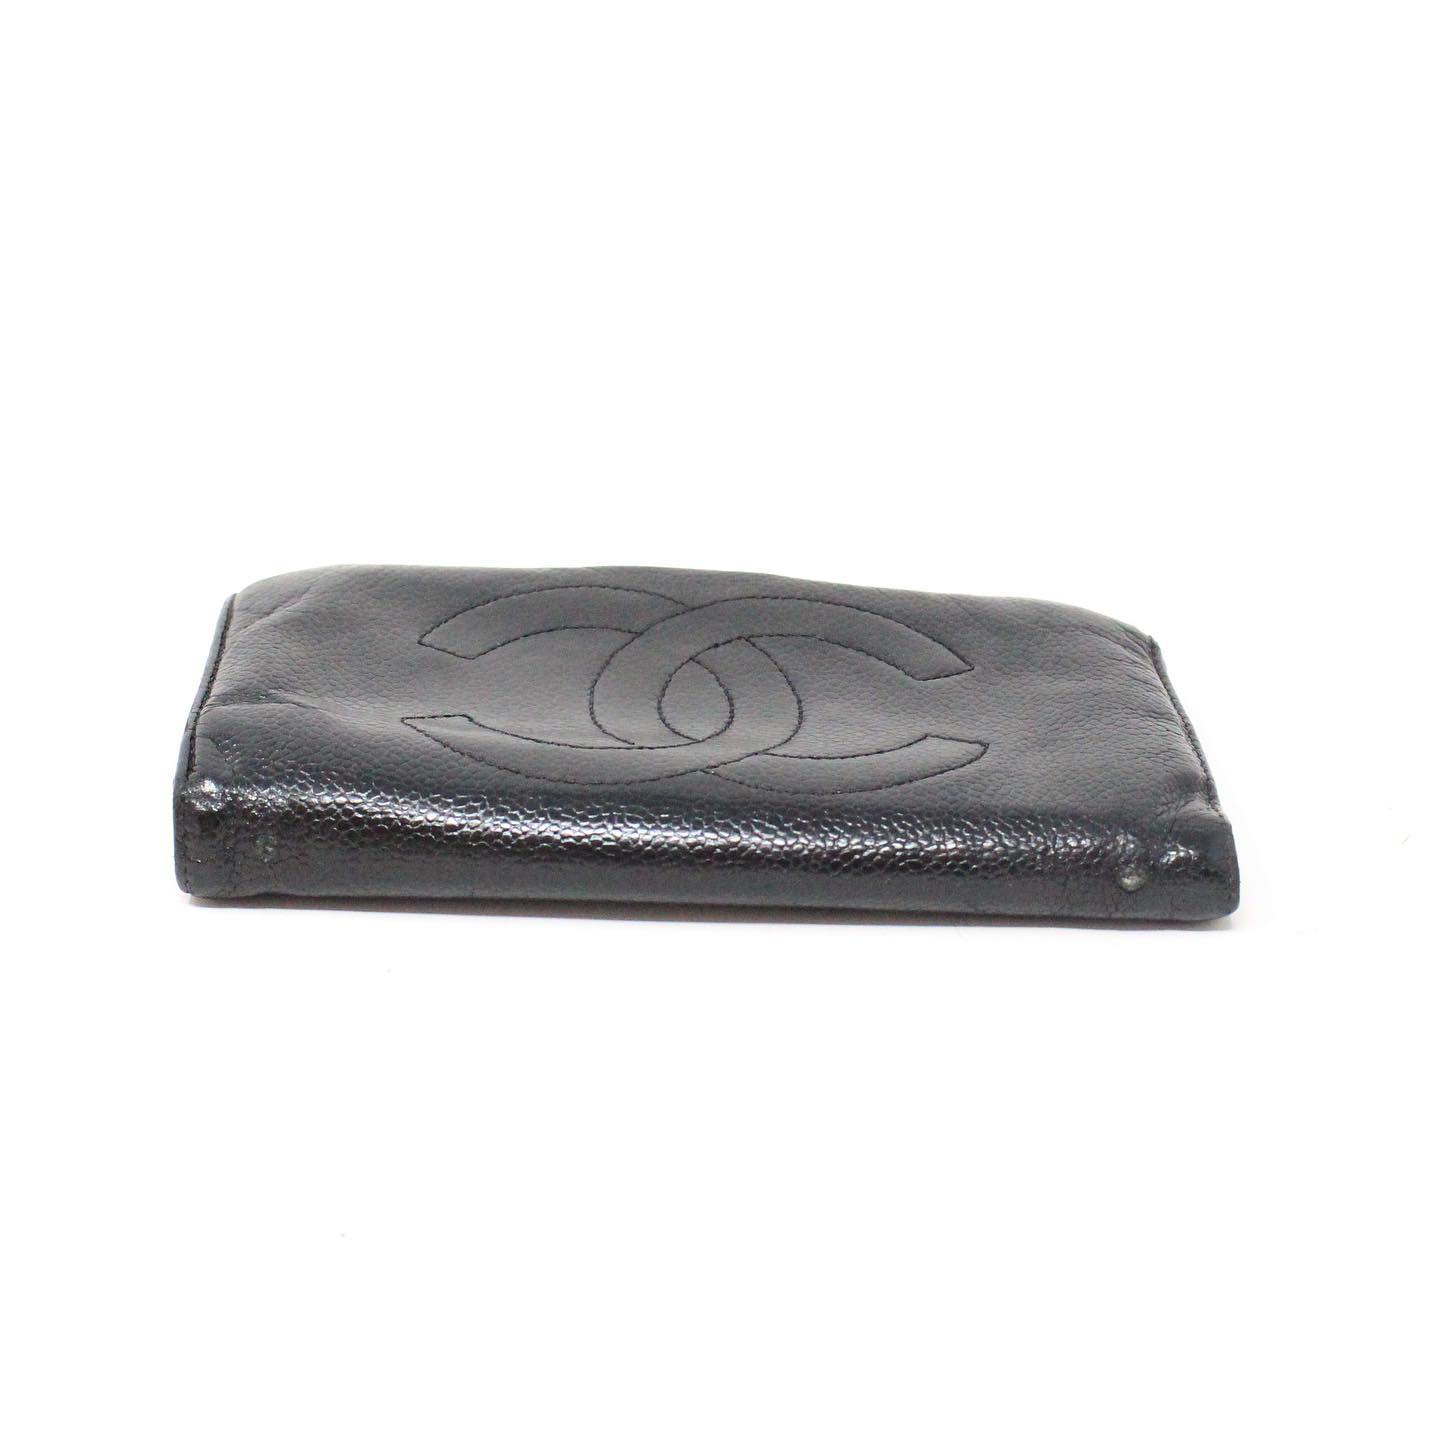 chanel black caviar wallet